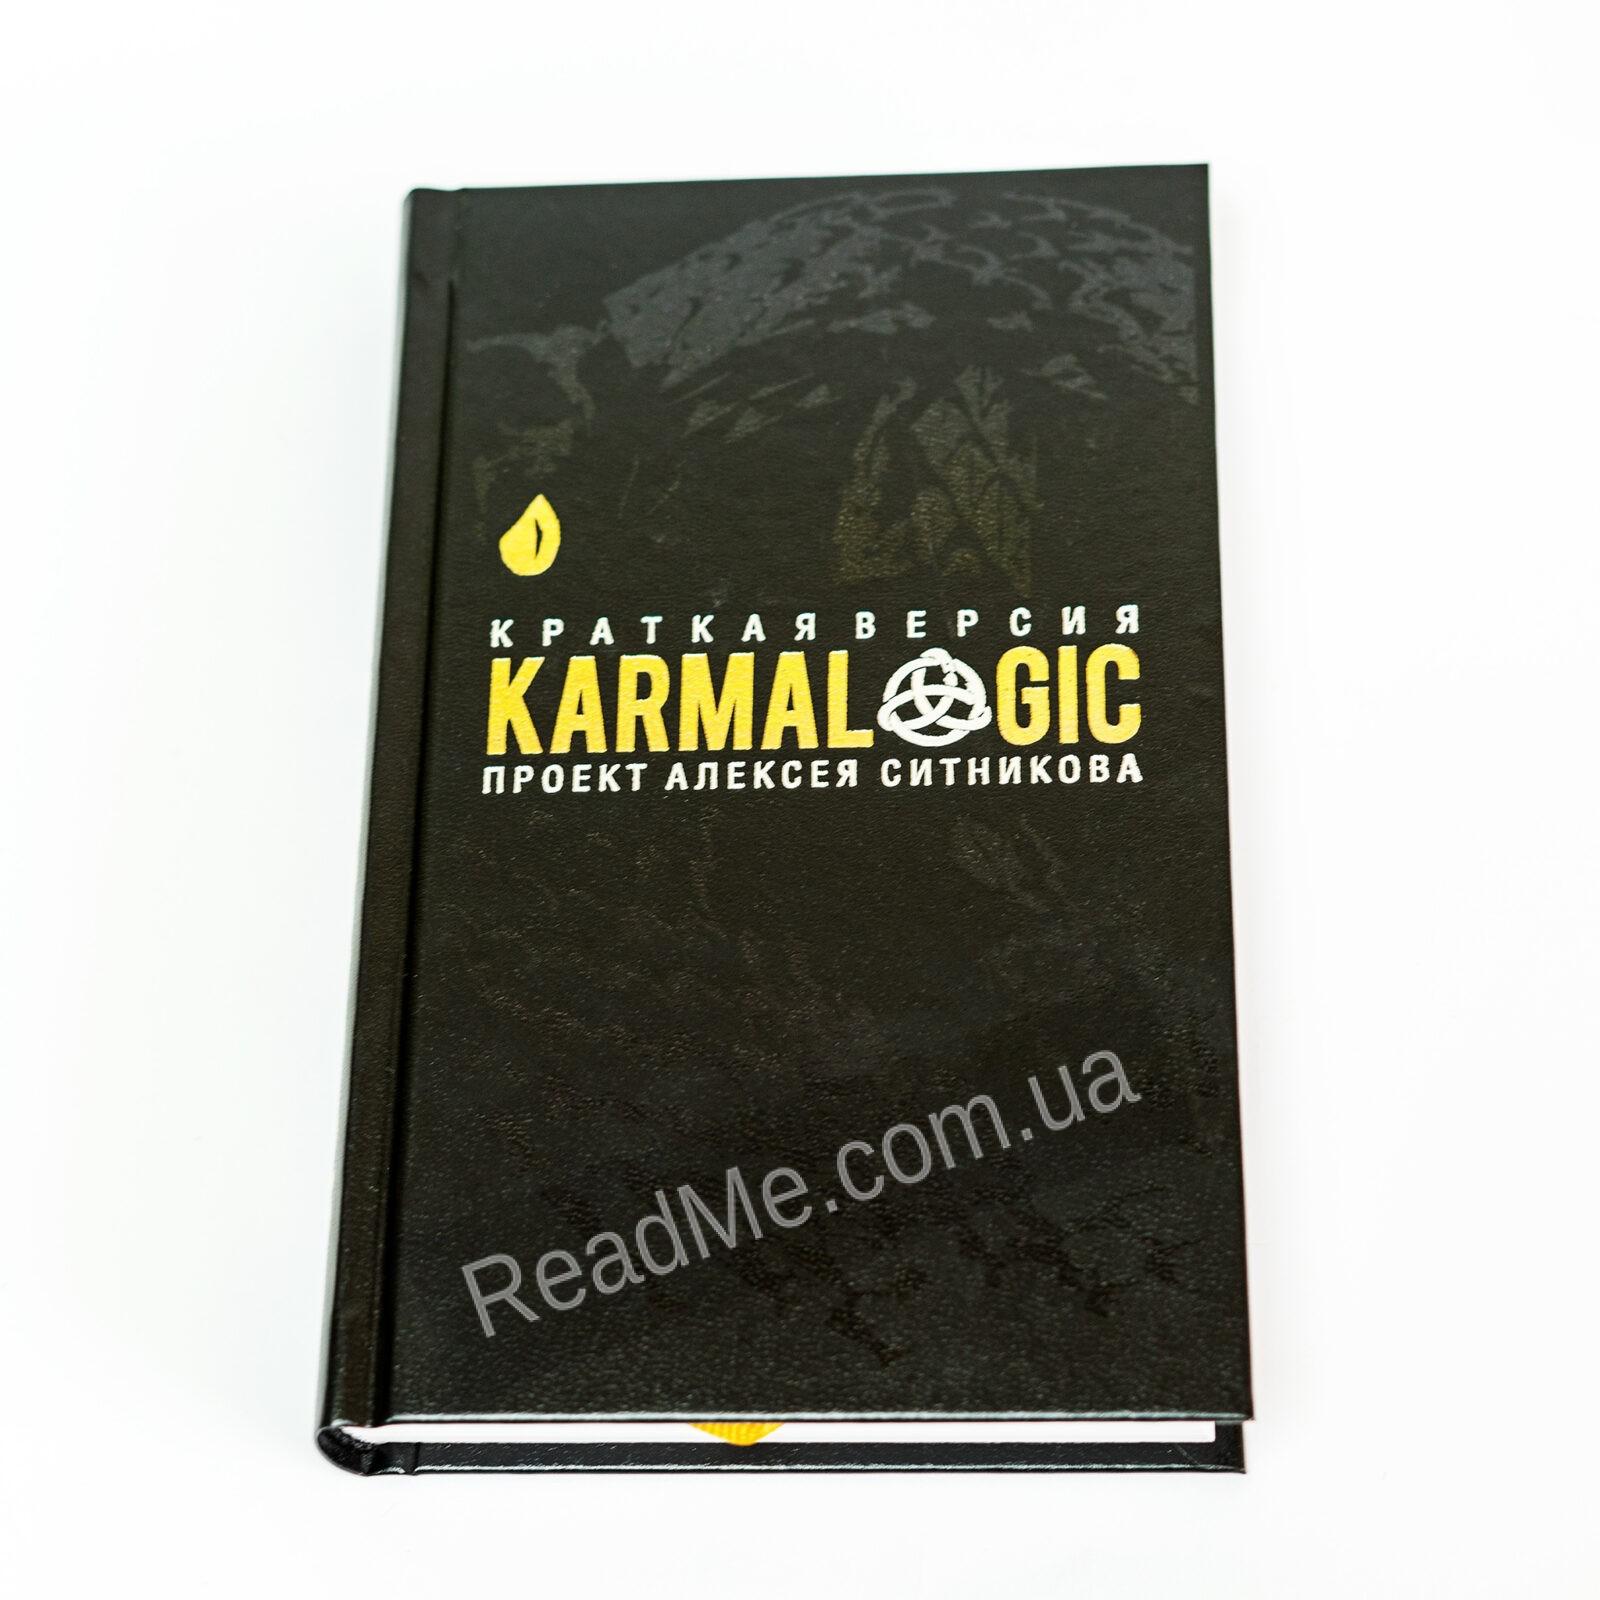 Karmalogic sitnikov download pdf